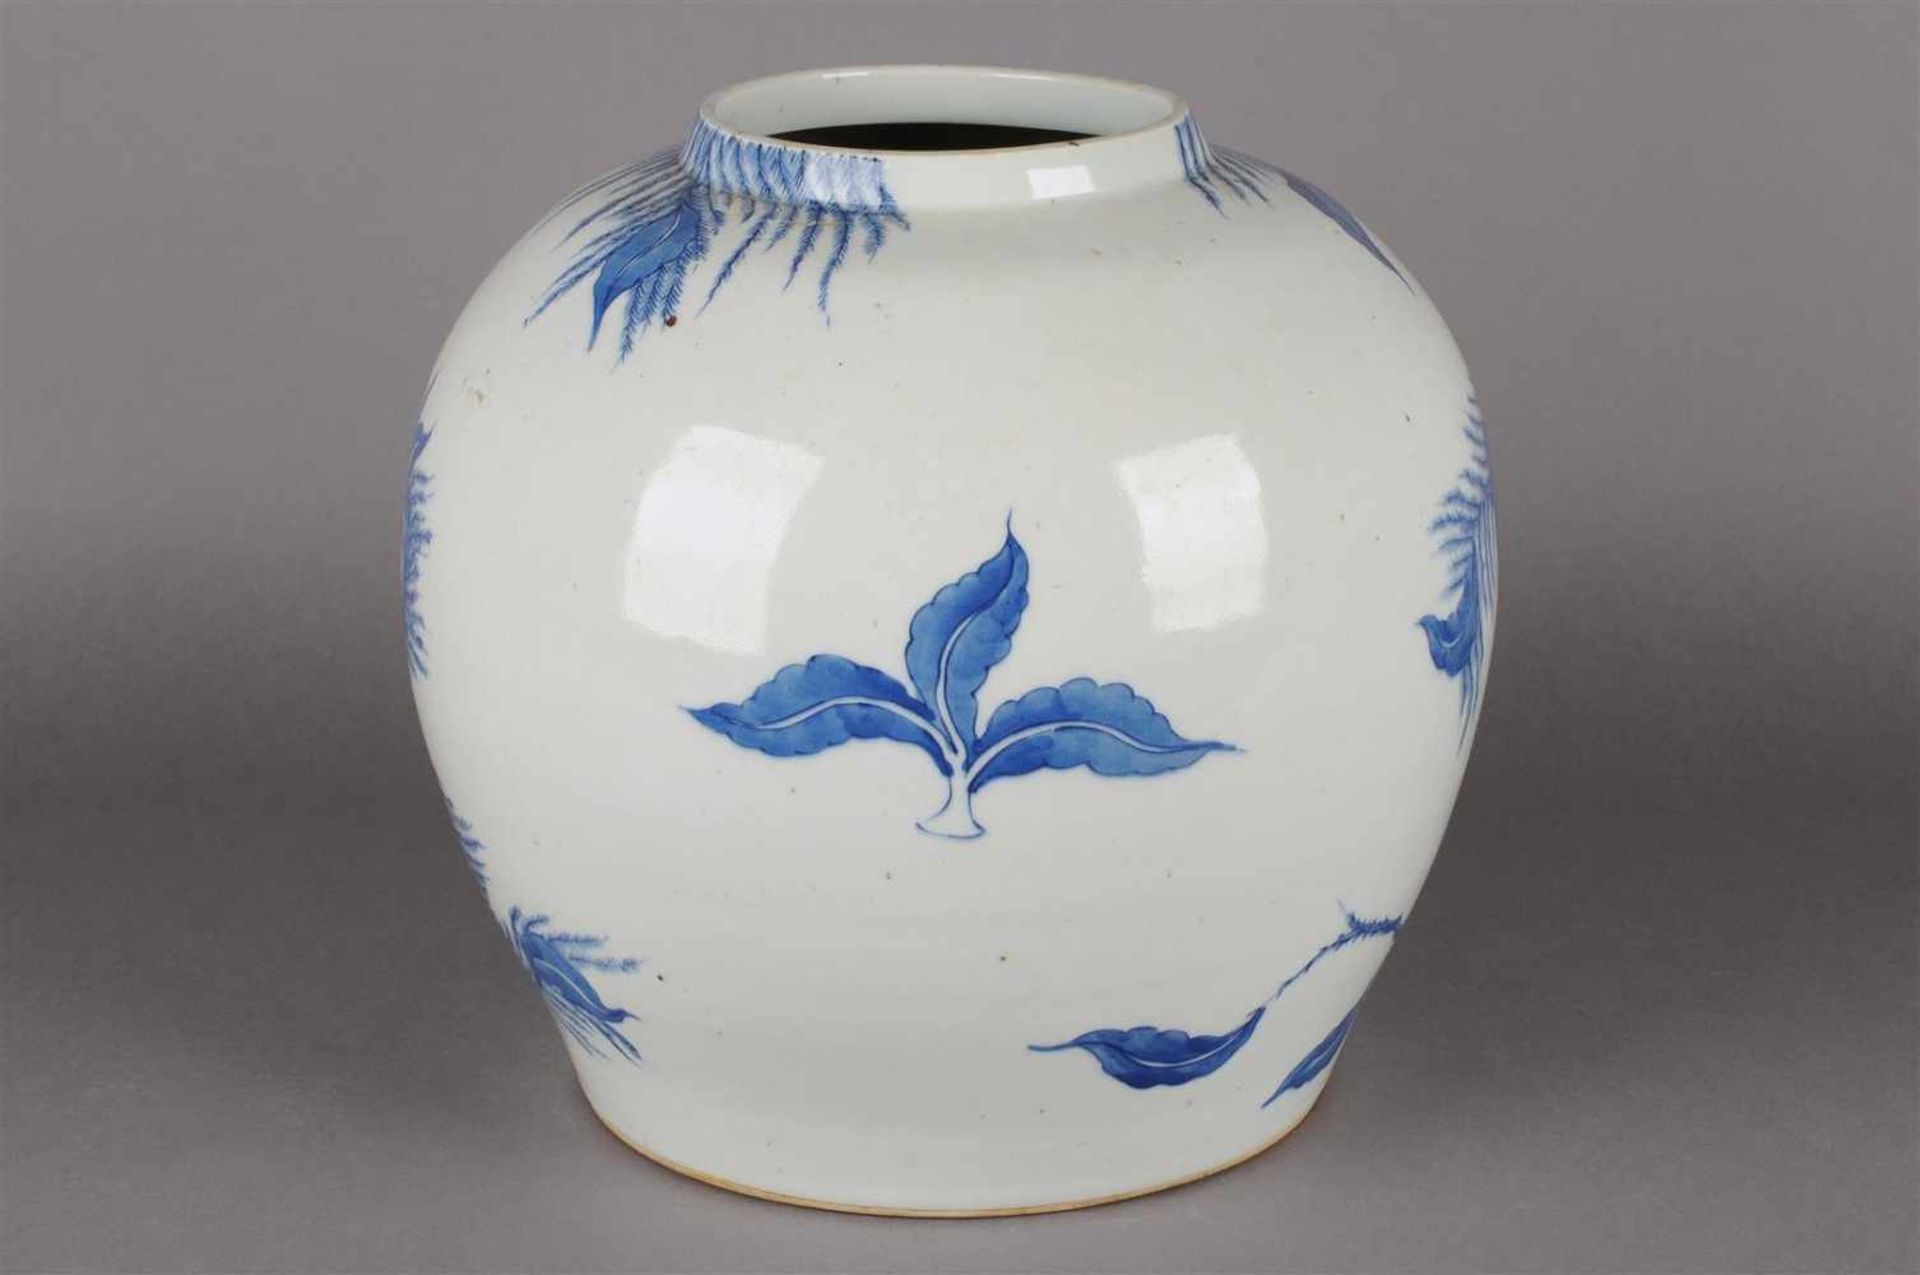 Blauw wit porseleinen vaas met decor van bloemen en vogels, niet gemerkt, China 20e eeuw. H: 25 cm. - Bild 2 aus 6